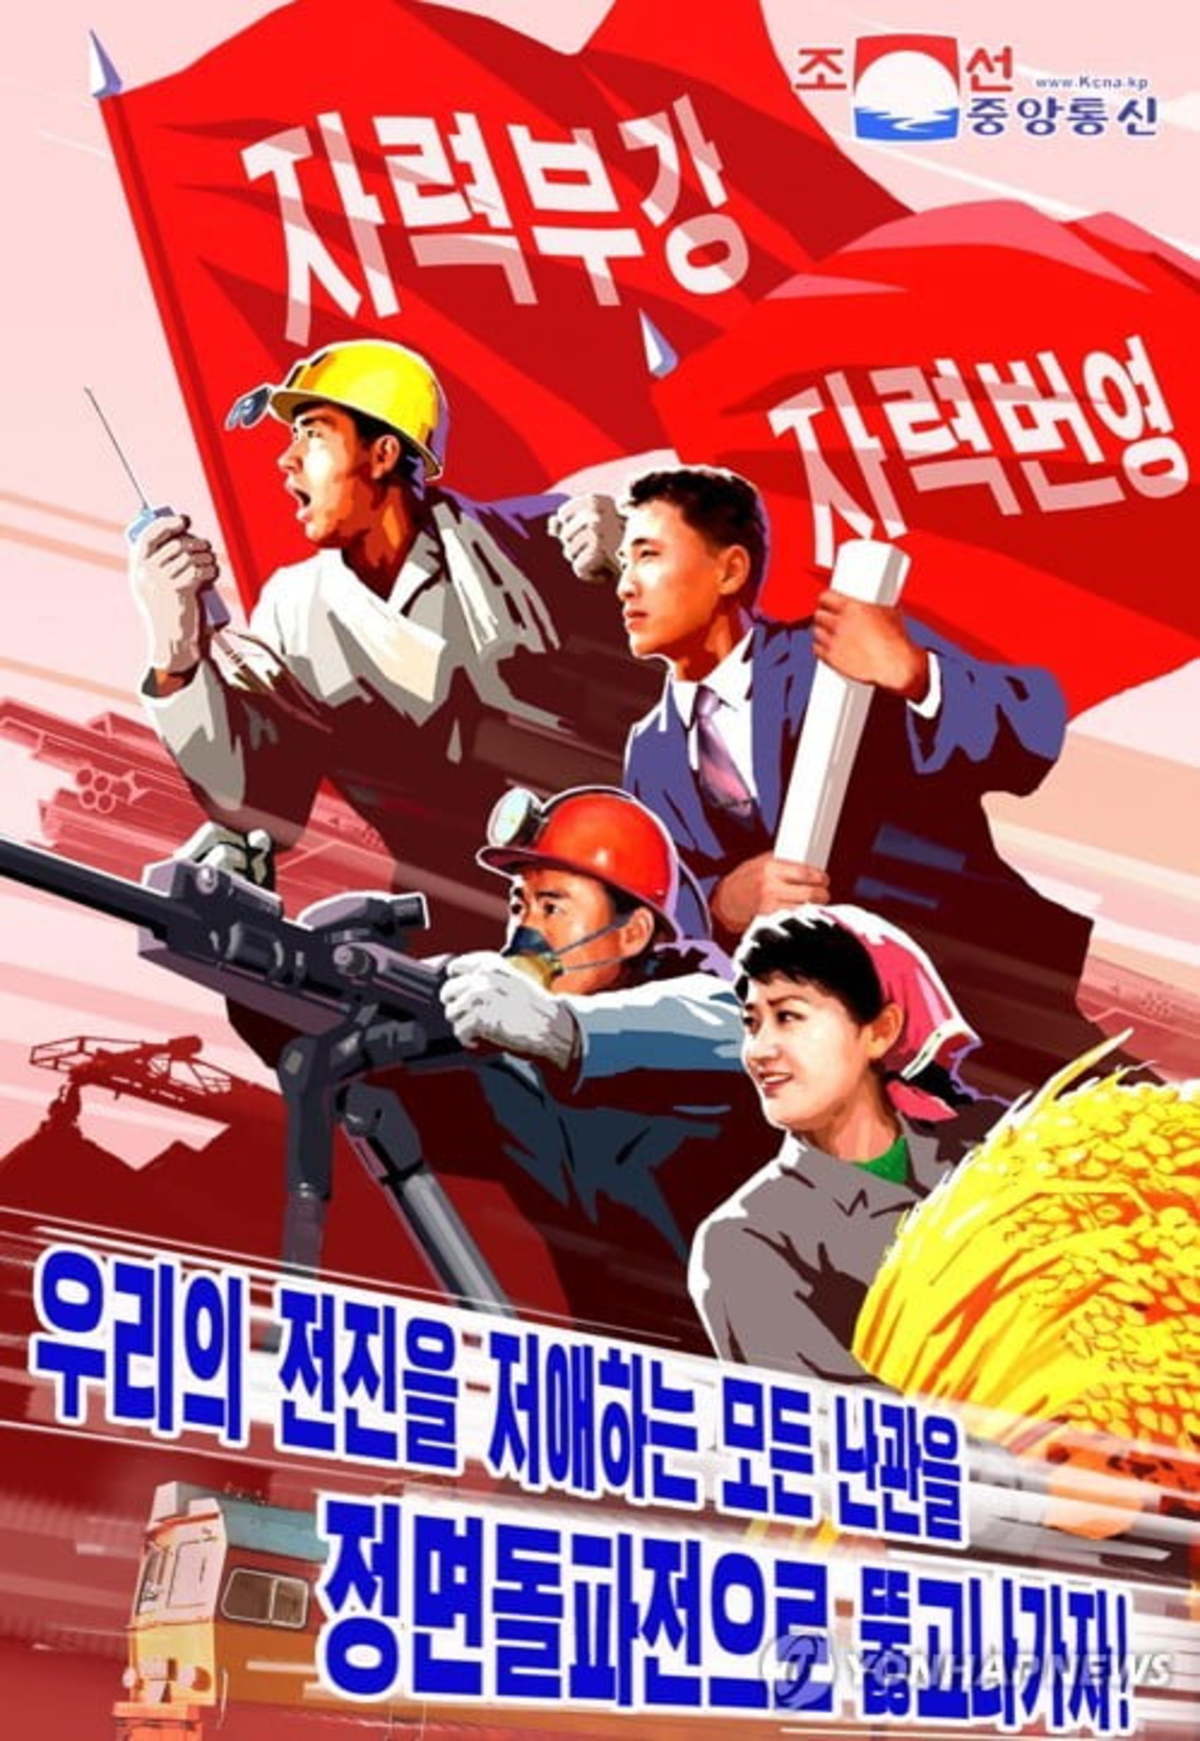 2020년 1월 22일 북한 관영 조선중앙통신이 발표한 이 이미지는 노동당 중앙위원회 제7기 제5차 조기총회에서 결정된 중요한 과업을 강조하는 새로운 선전 포스터 중 하나를 보여주고 있다.  년.  이 포스터는 다음과 같습니다. 